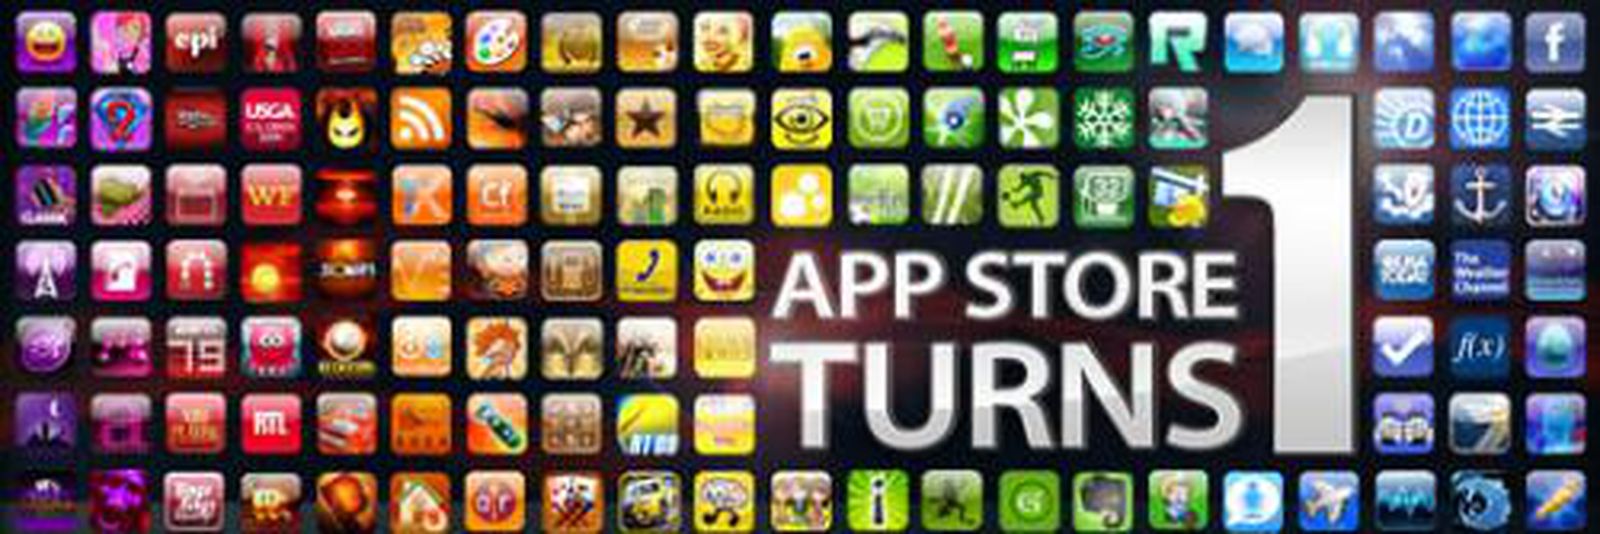 App store videos. APPSTORE. App Store 2011. App Store игра кости. Рев приложение.